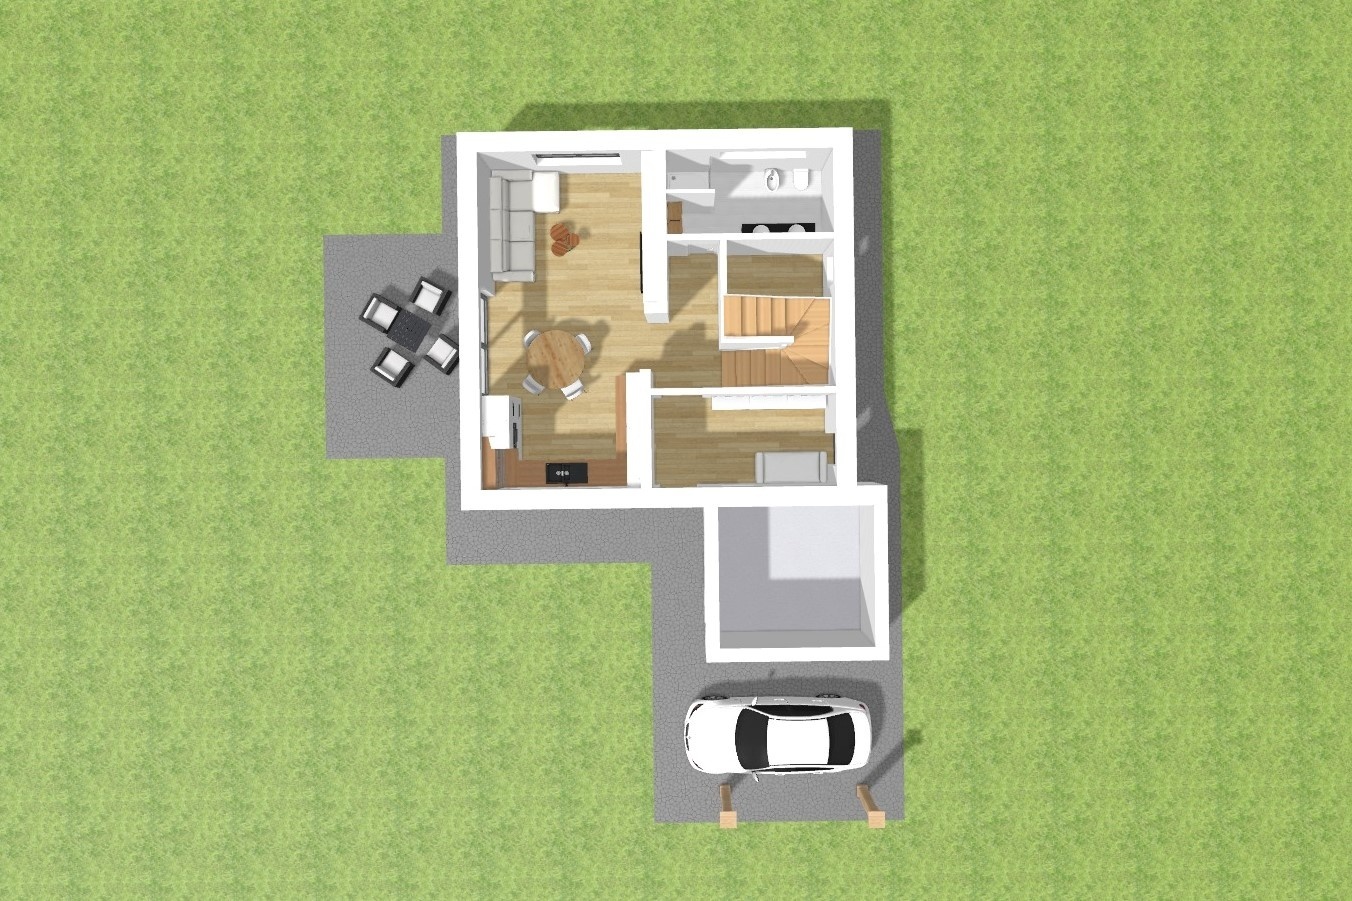 Novostavba rodinného domu, 4+1 s balkonem, terasou a stáním pro auto, Milíkov